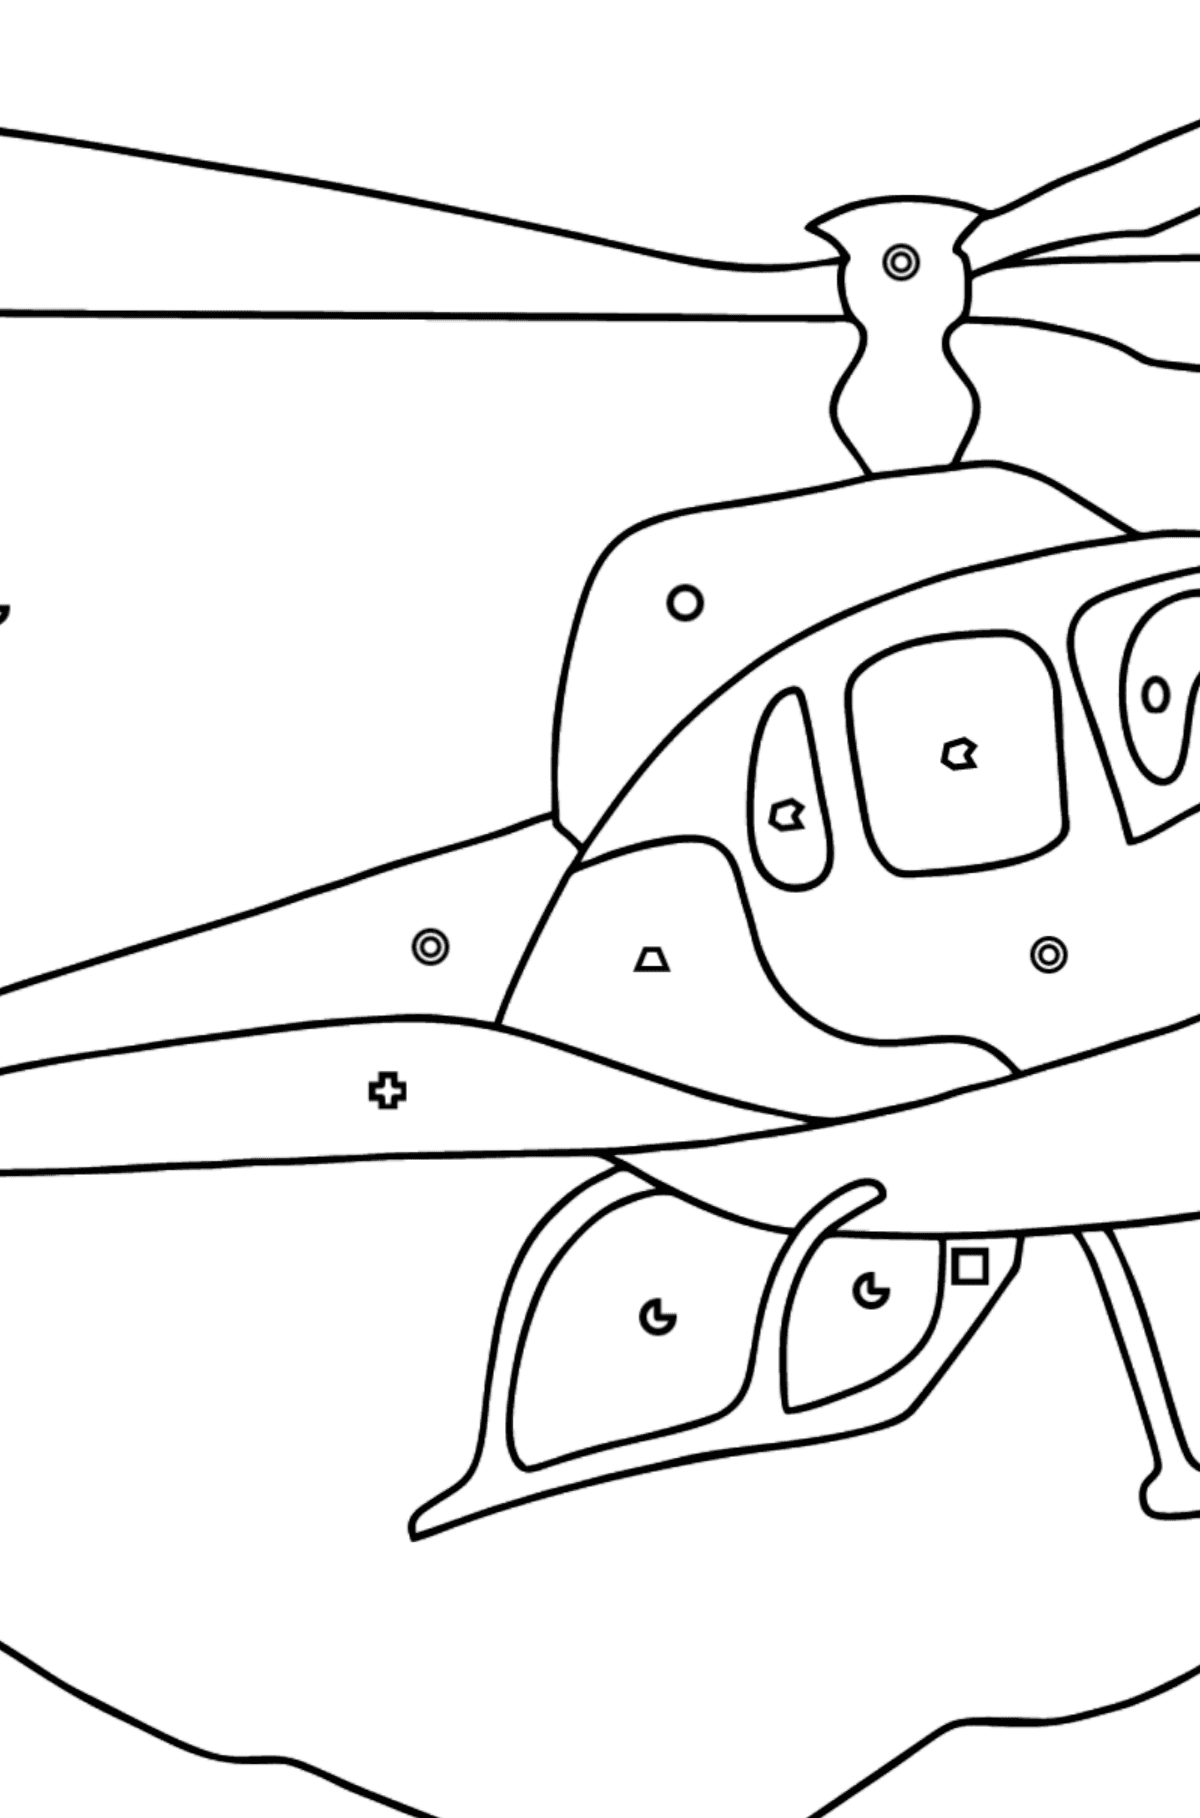 Dibujo para Colorear - Un Helicóptero de Ciudad - Colorear por Formas Geométricas para Niños